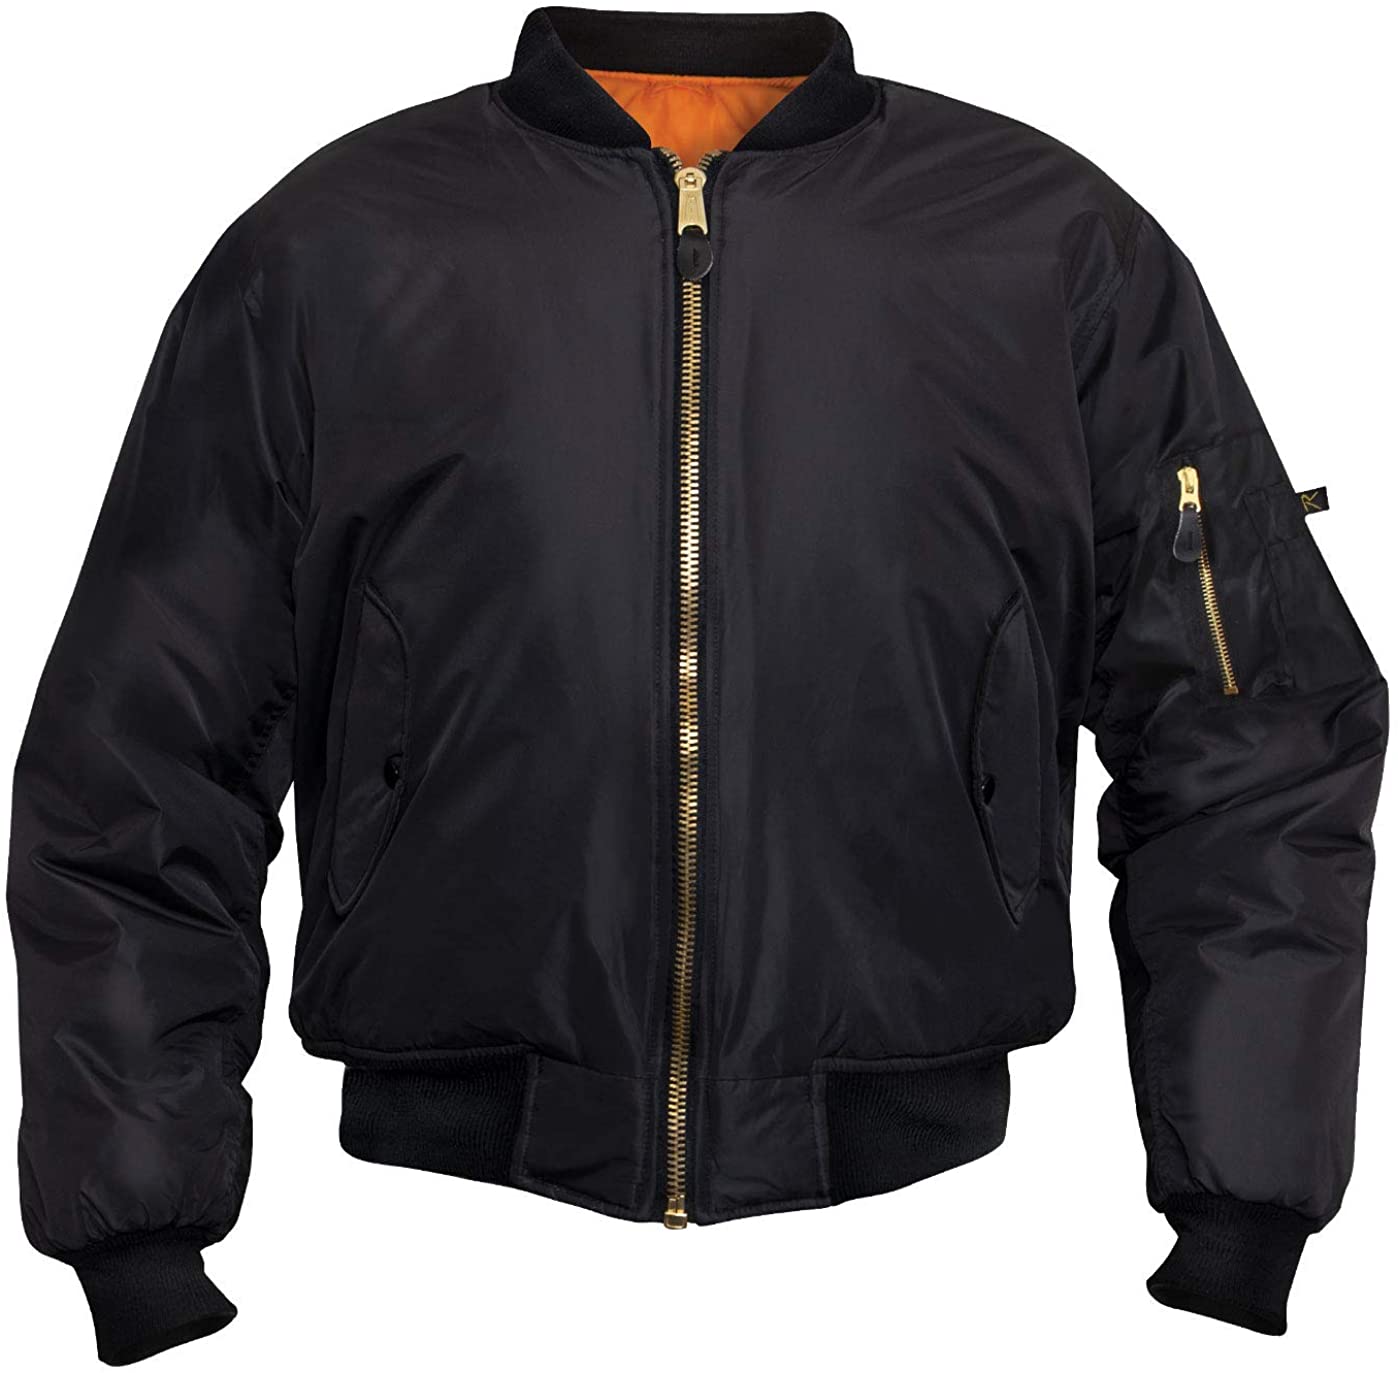 Rothco Enhanced Nylon MA-1 Flight Jacket, Black, Size Large uH98 | eBay